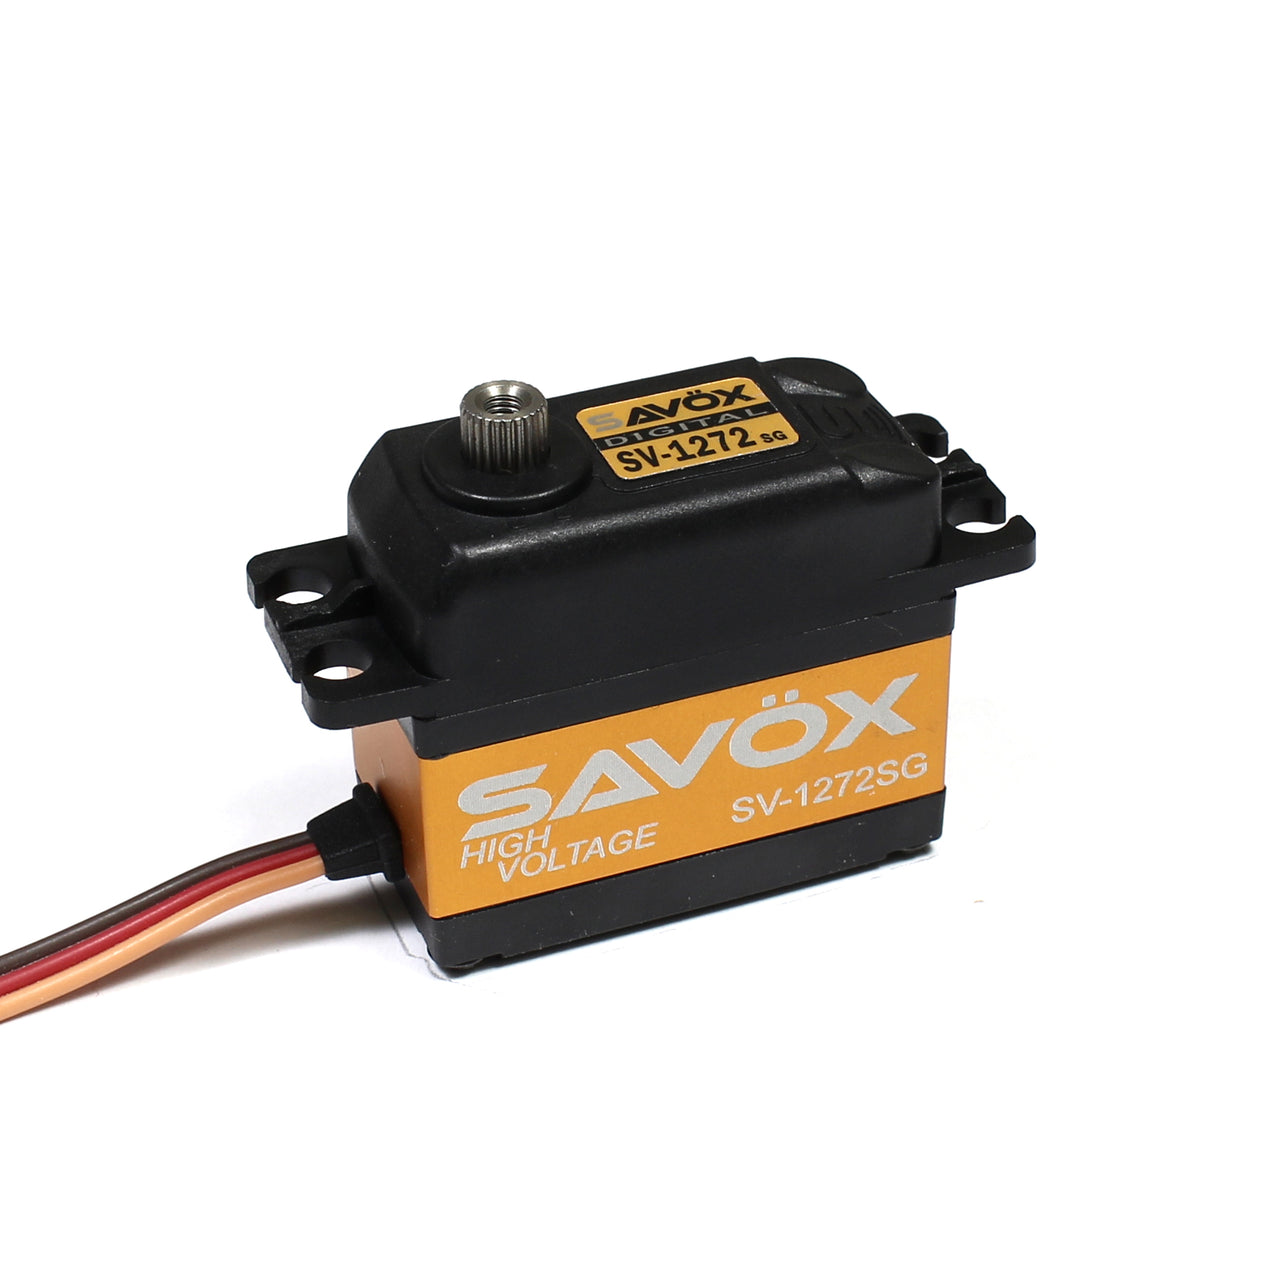 SAVSV0236MG Servo haute tension à échelle 1/5 0,17 s / 555,5 oz à 7,4 V